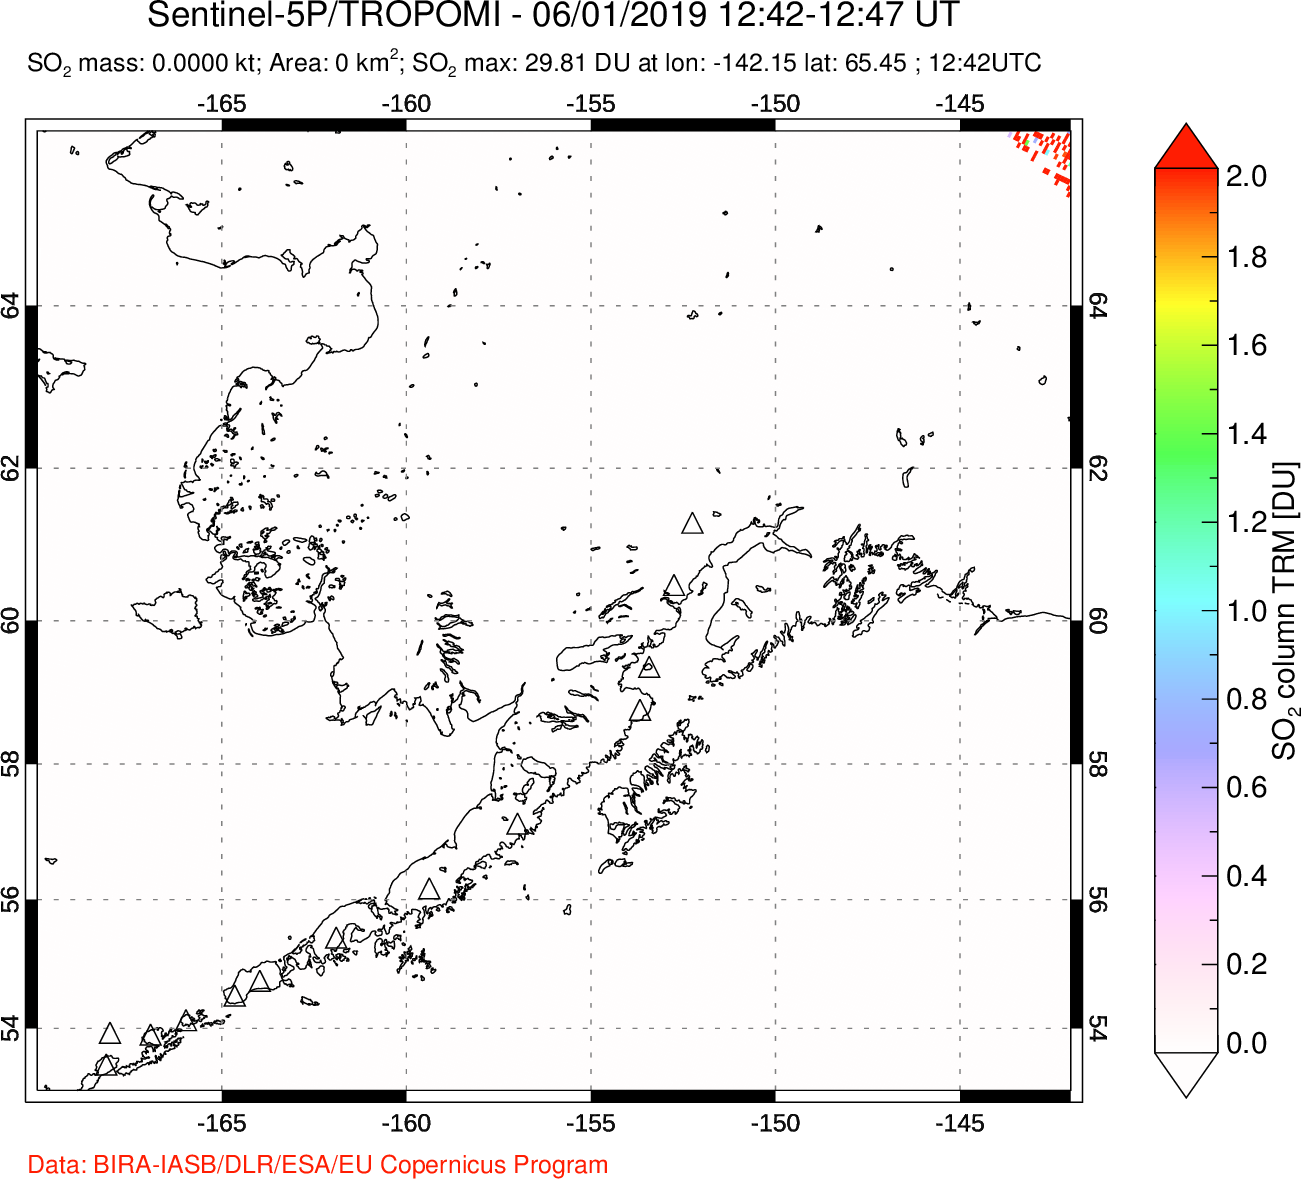 A sulfur dioxide image over Alaska, USA on Jun 01, 2019.